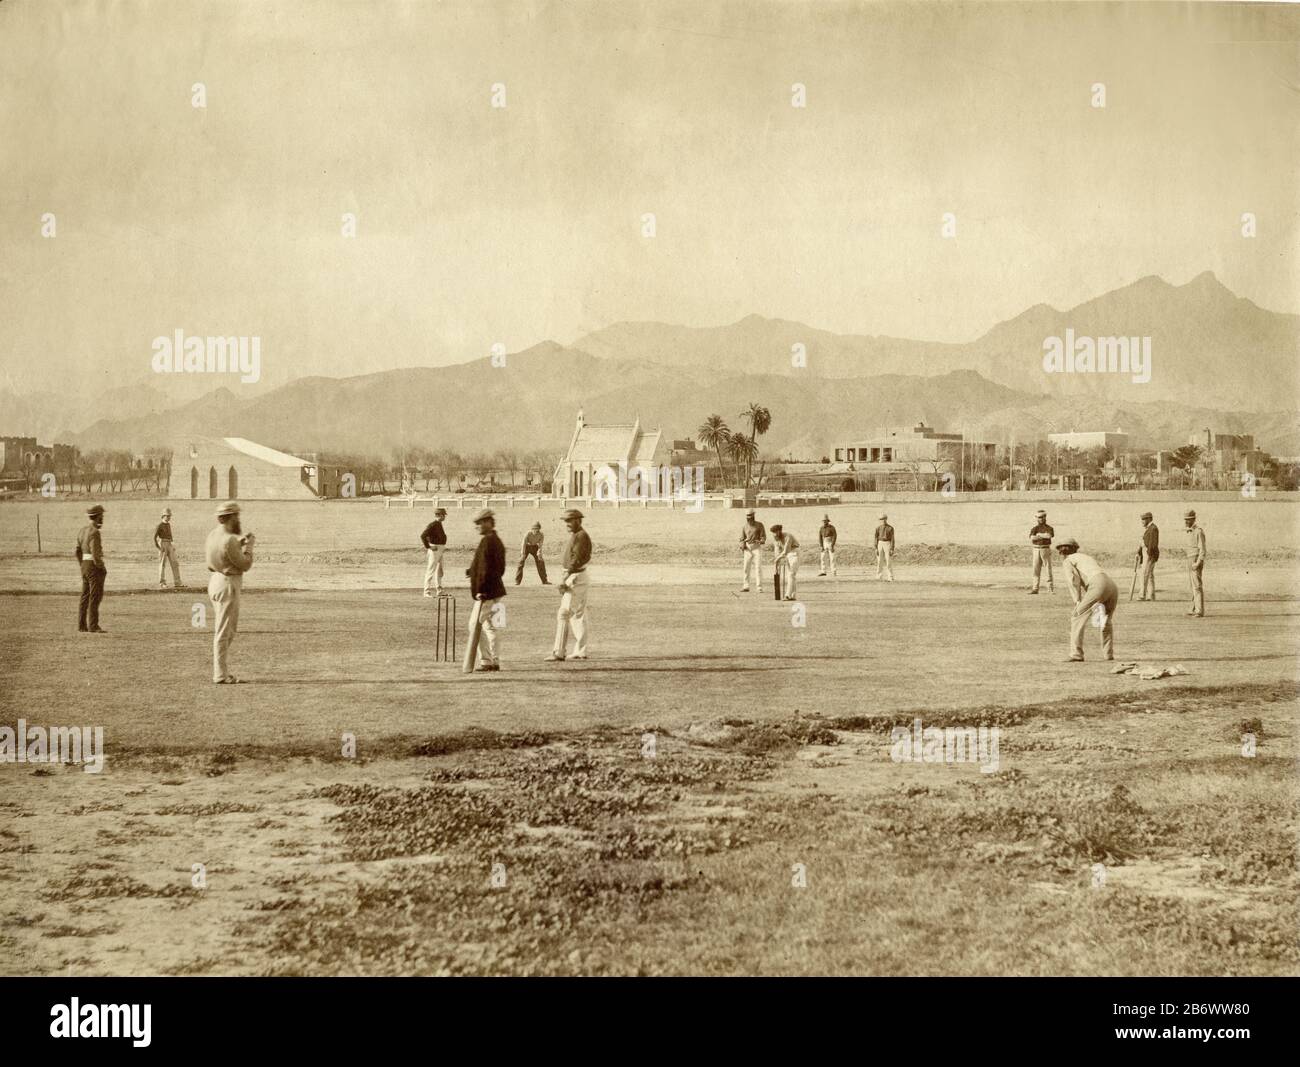 Officiers hors service de l'armée britannique jouant au cricket sur le terrain du défilé à Kohat, Inde, (Pakistan) c. 1862. C'est certain;y l'une des premières, sinon la première, photographie du jeu en cours de jeu en Inde Banque D'Images